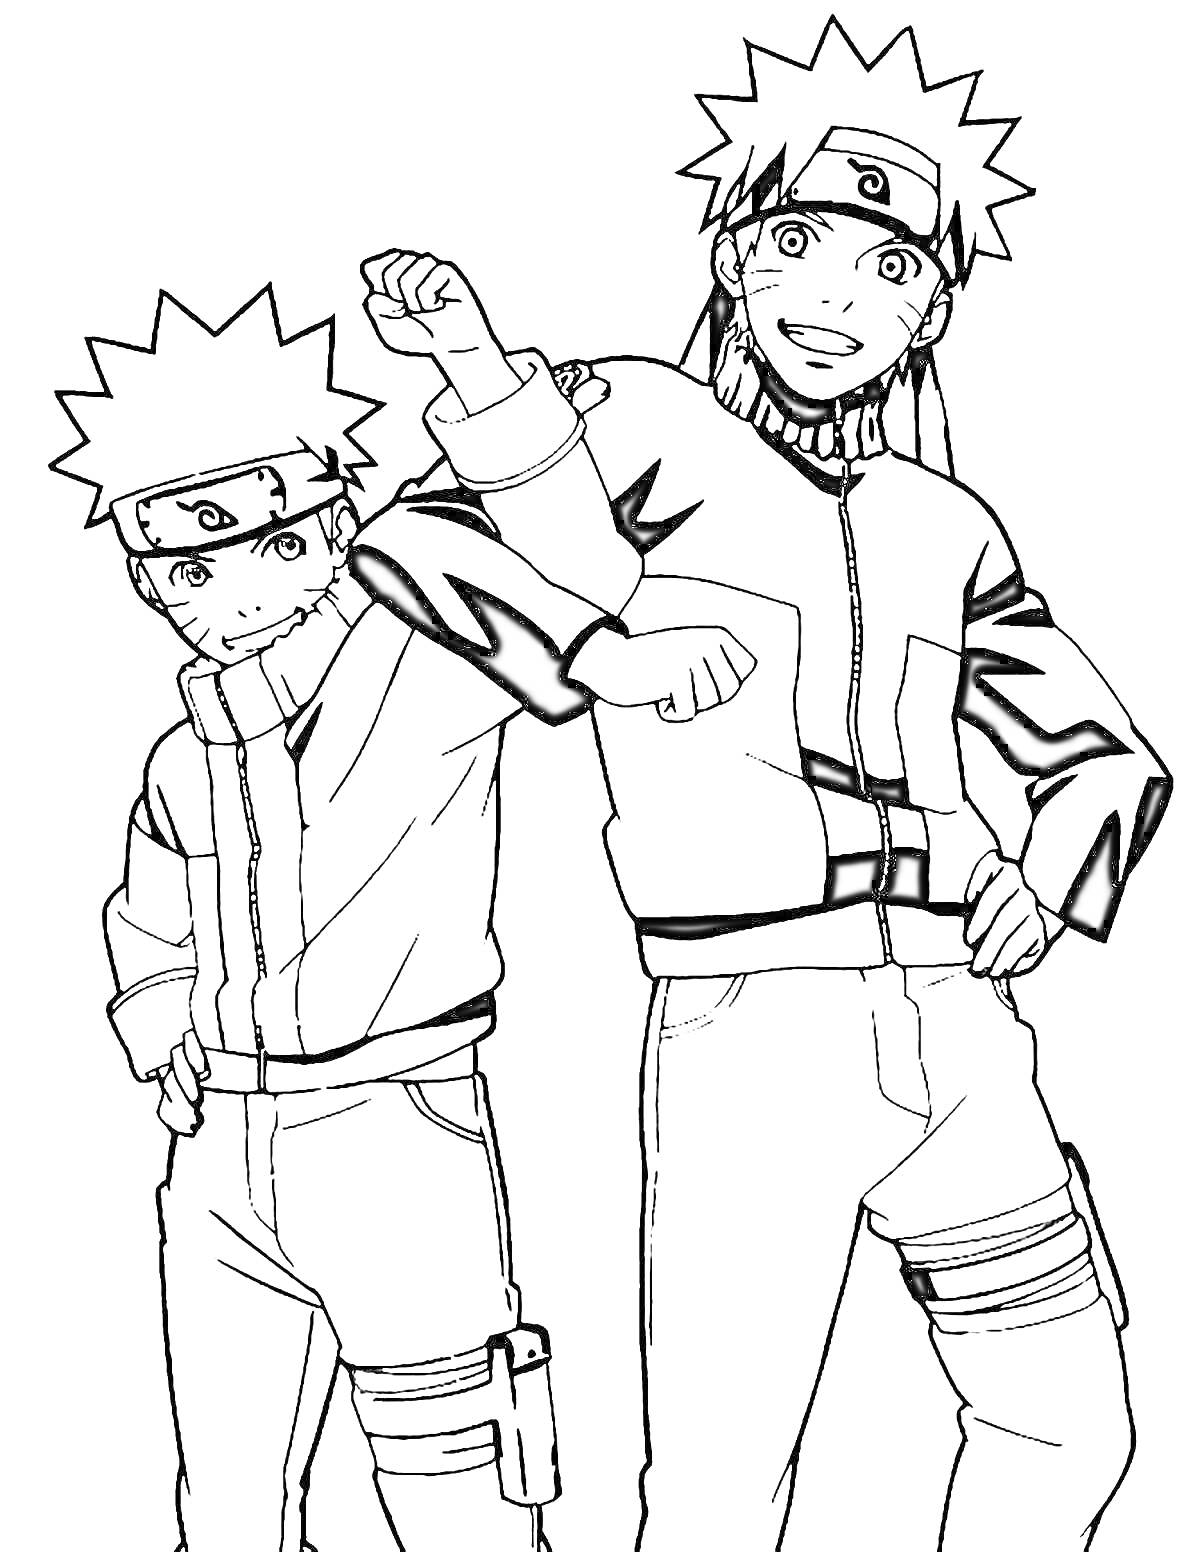 Раскраска Два персонажа из Наруто в спортивных костюмах, стоят рядом, один персонаж младше, другой старше, оба улыбаются.